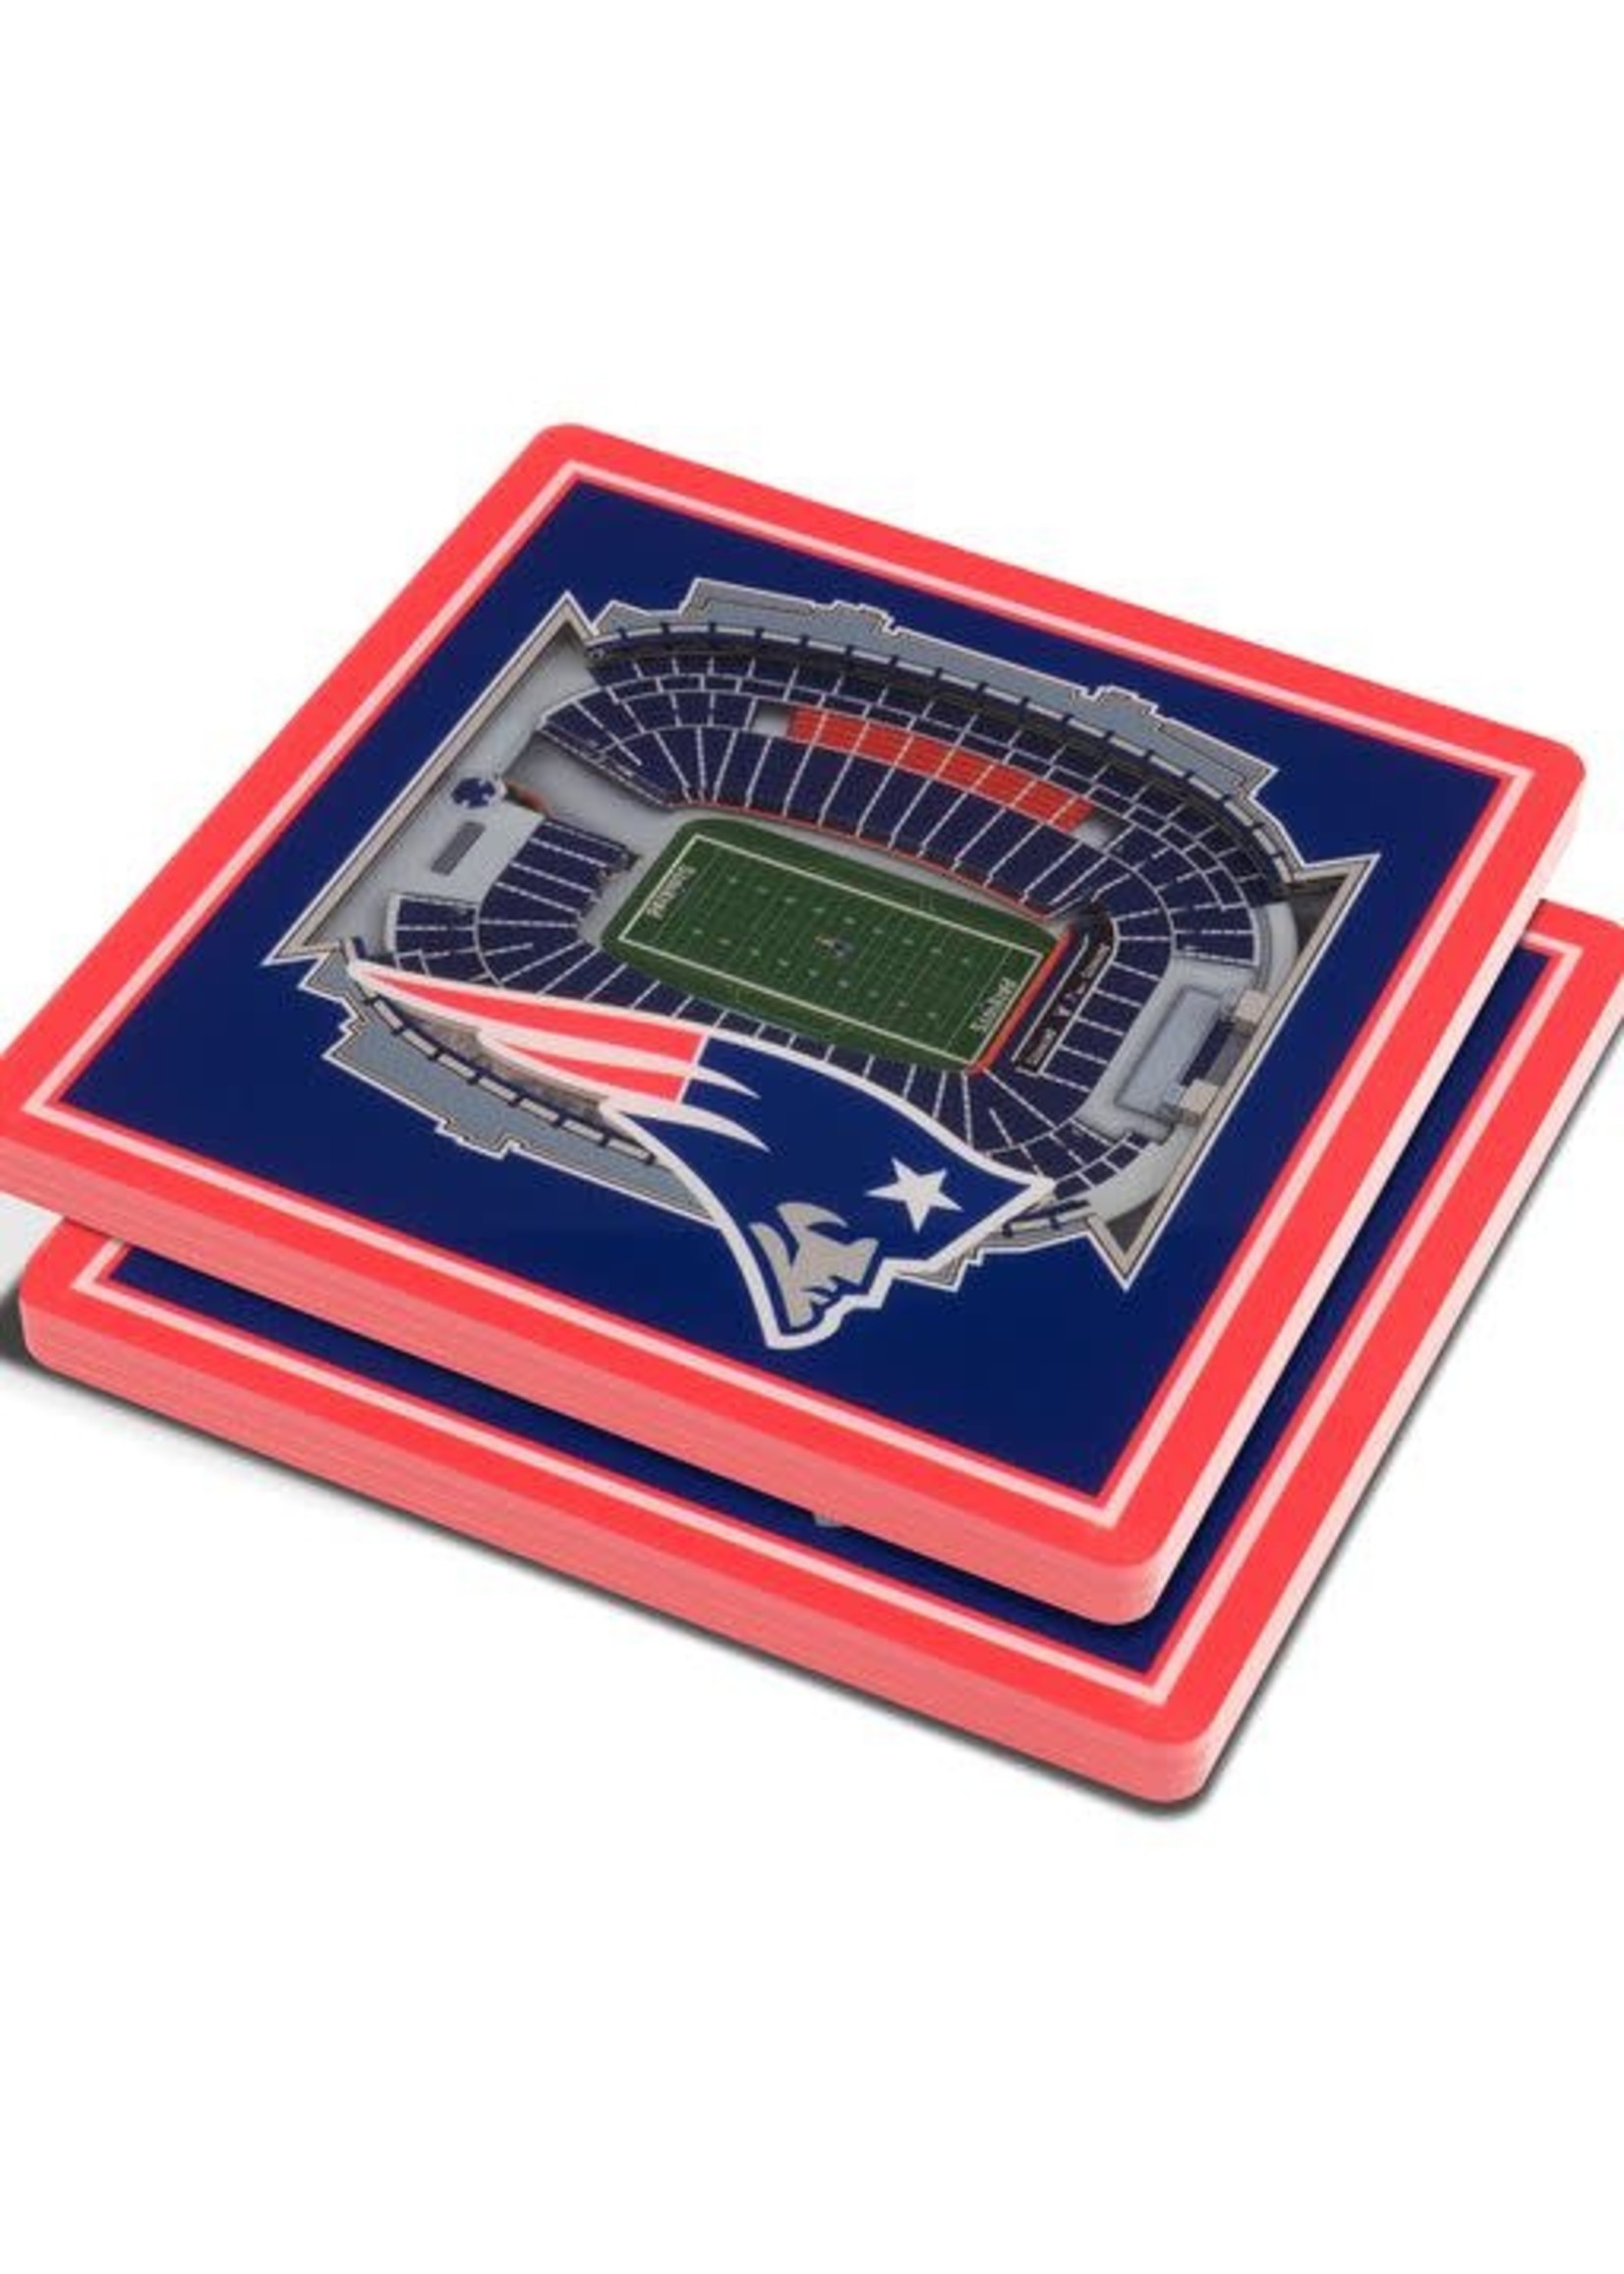 Patriots Stadium Coasters